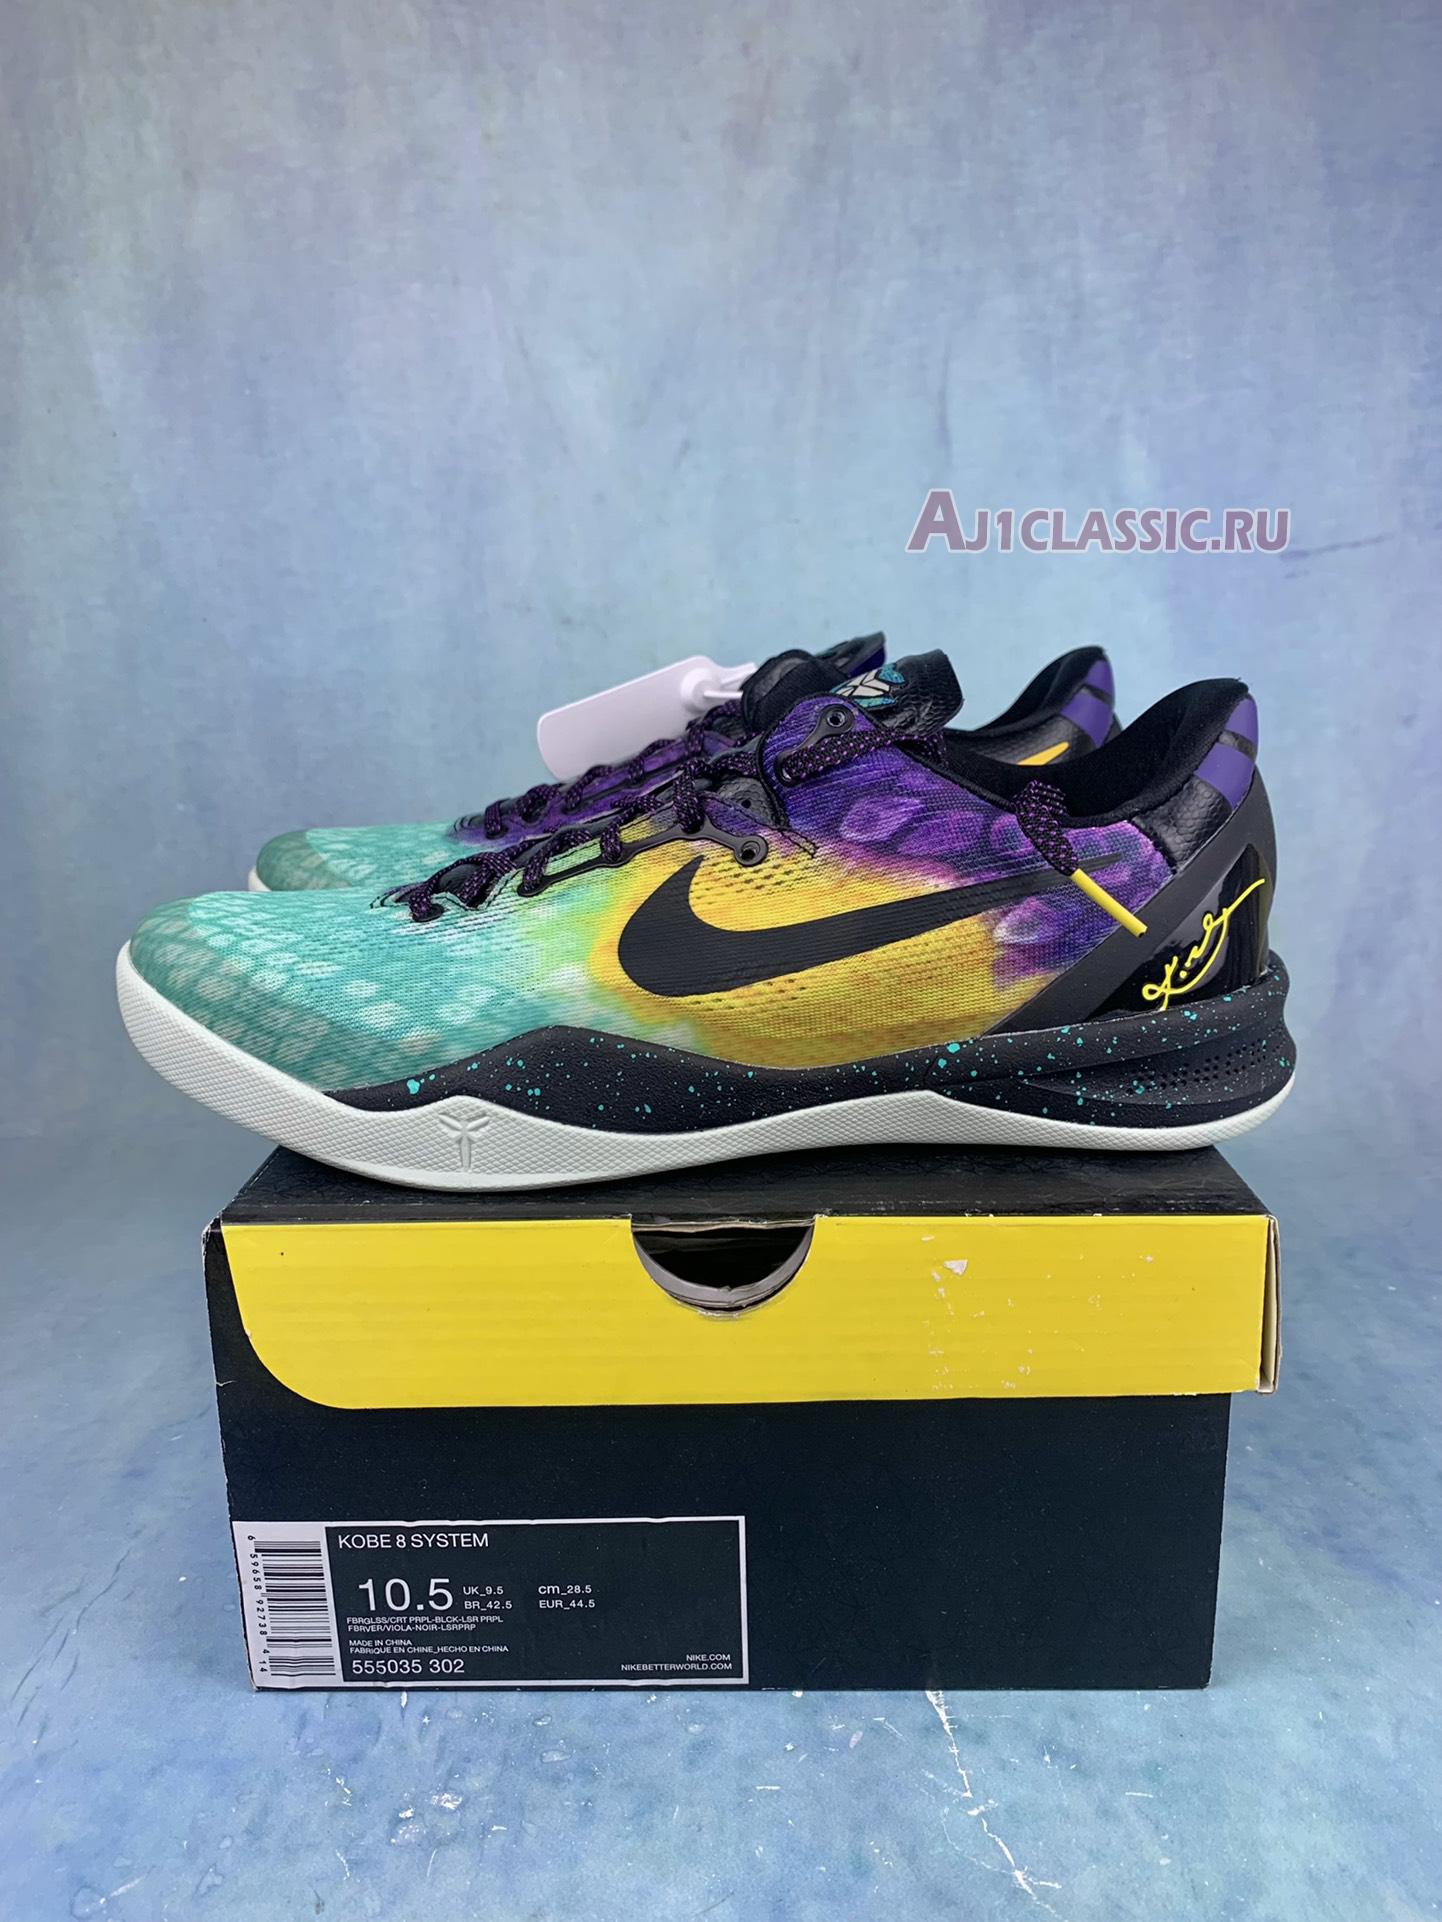 Nike Kobe 8 System Easter 555035-302 Fiberglass/Court Purple/Back/Laser Purple Sneakers